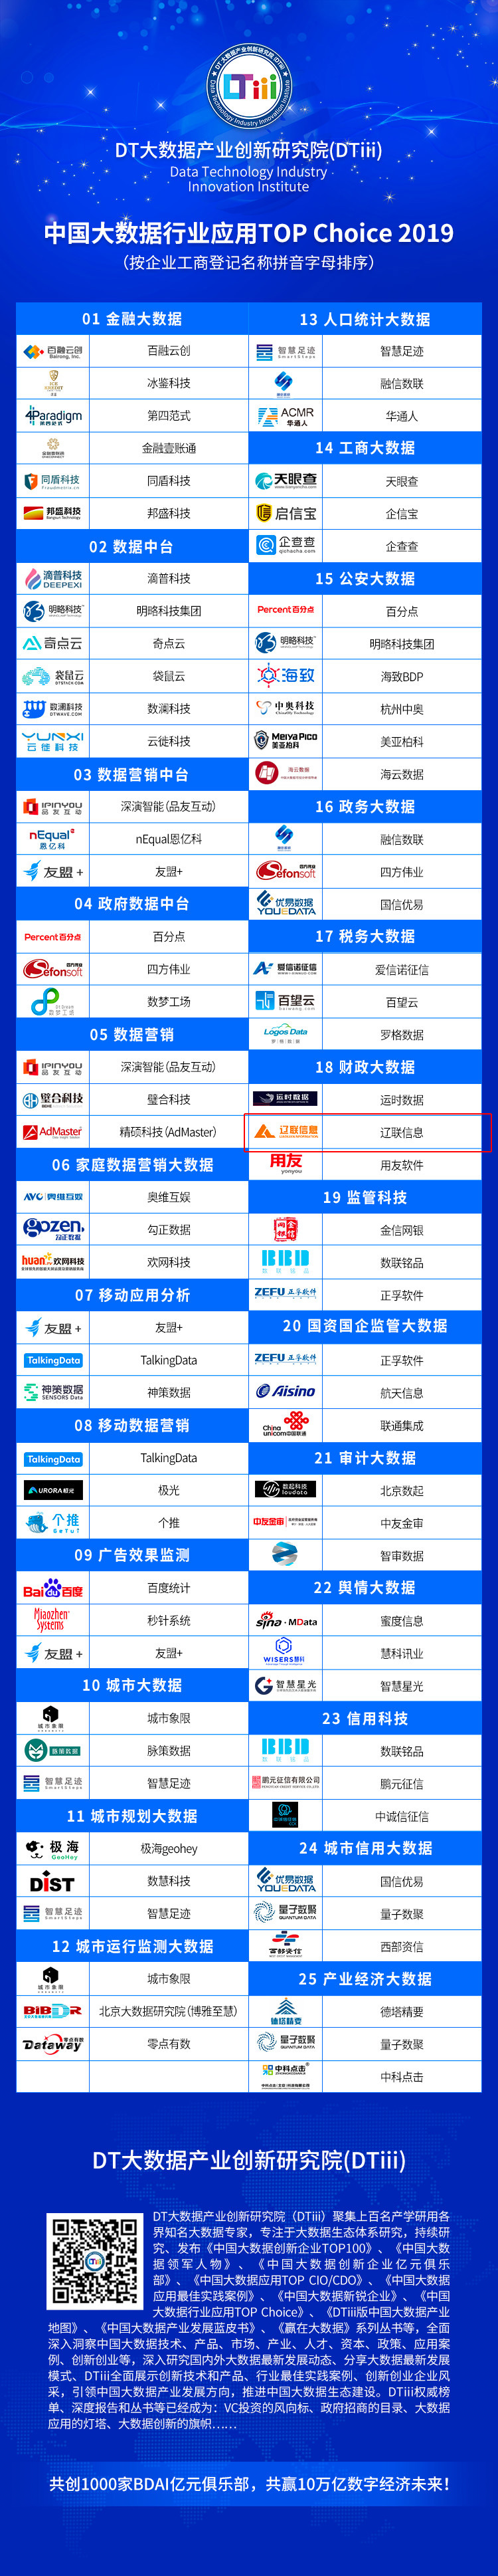 中国大数据行业应用Top Choice 2019.jpg